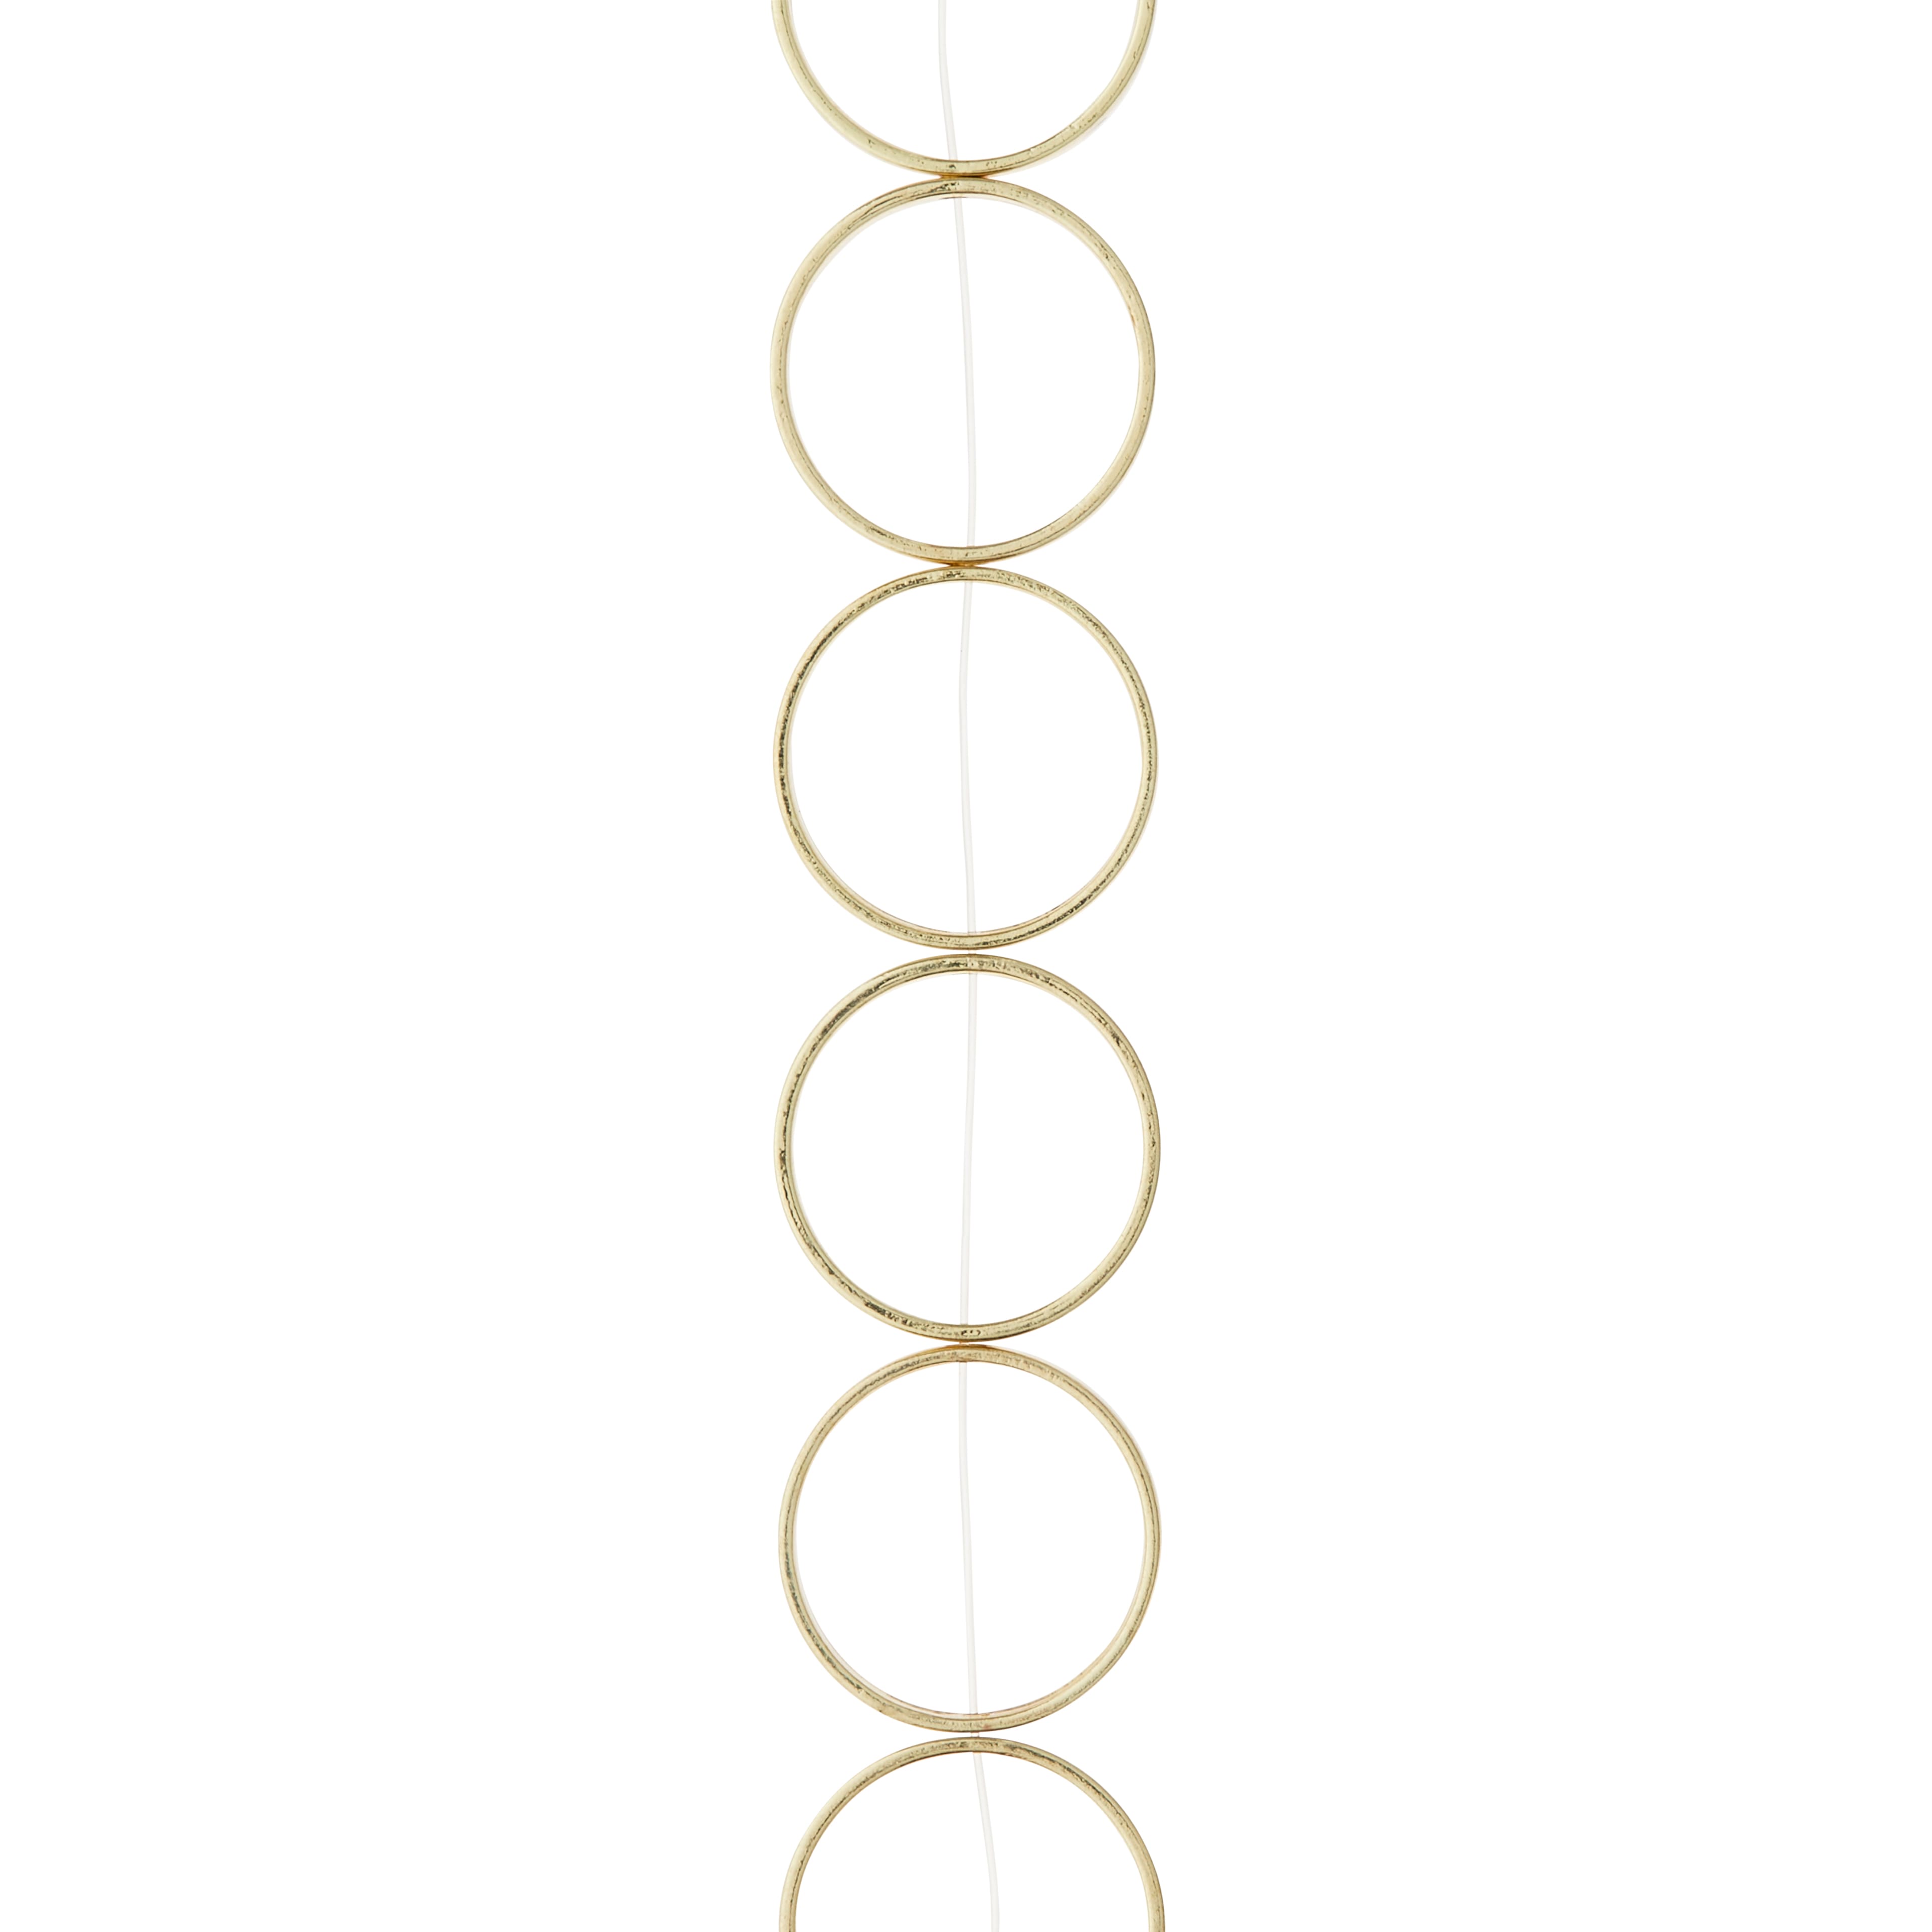 Gold Large Metal Loop Beads, 22mm by Bead Landing&#x2122;